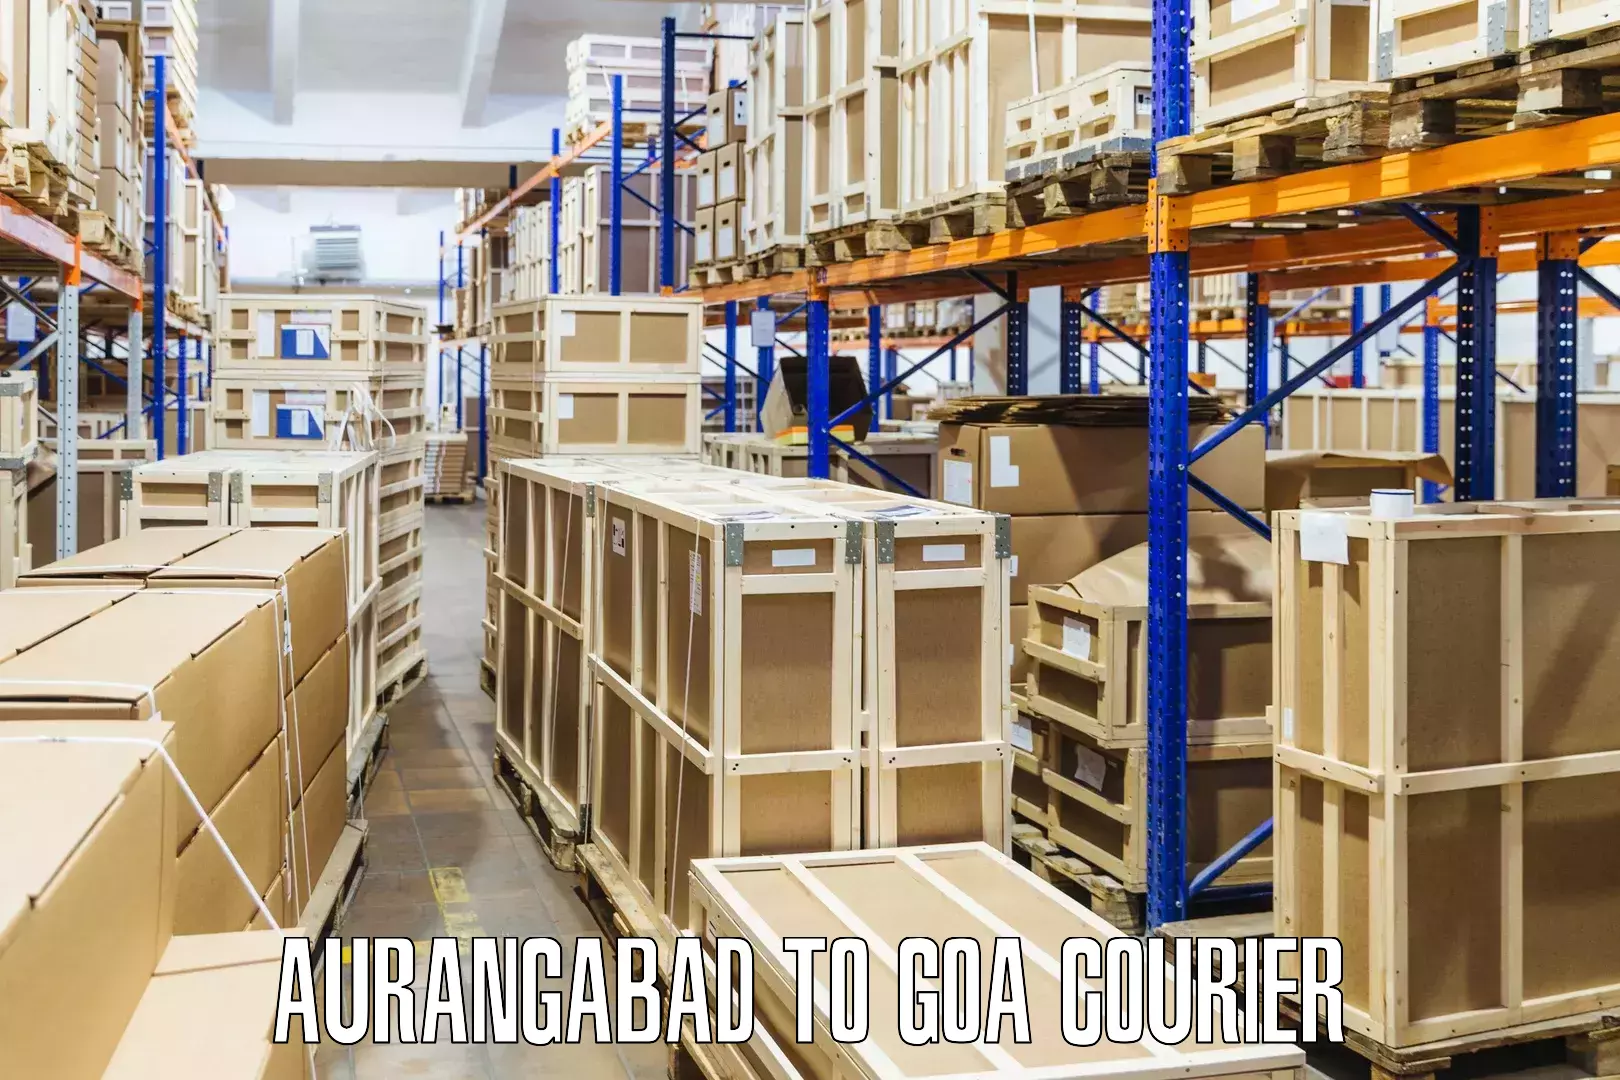 International courier networks Aurangabad to Bardez